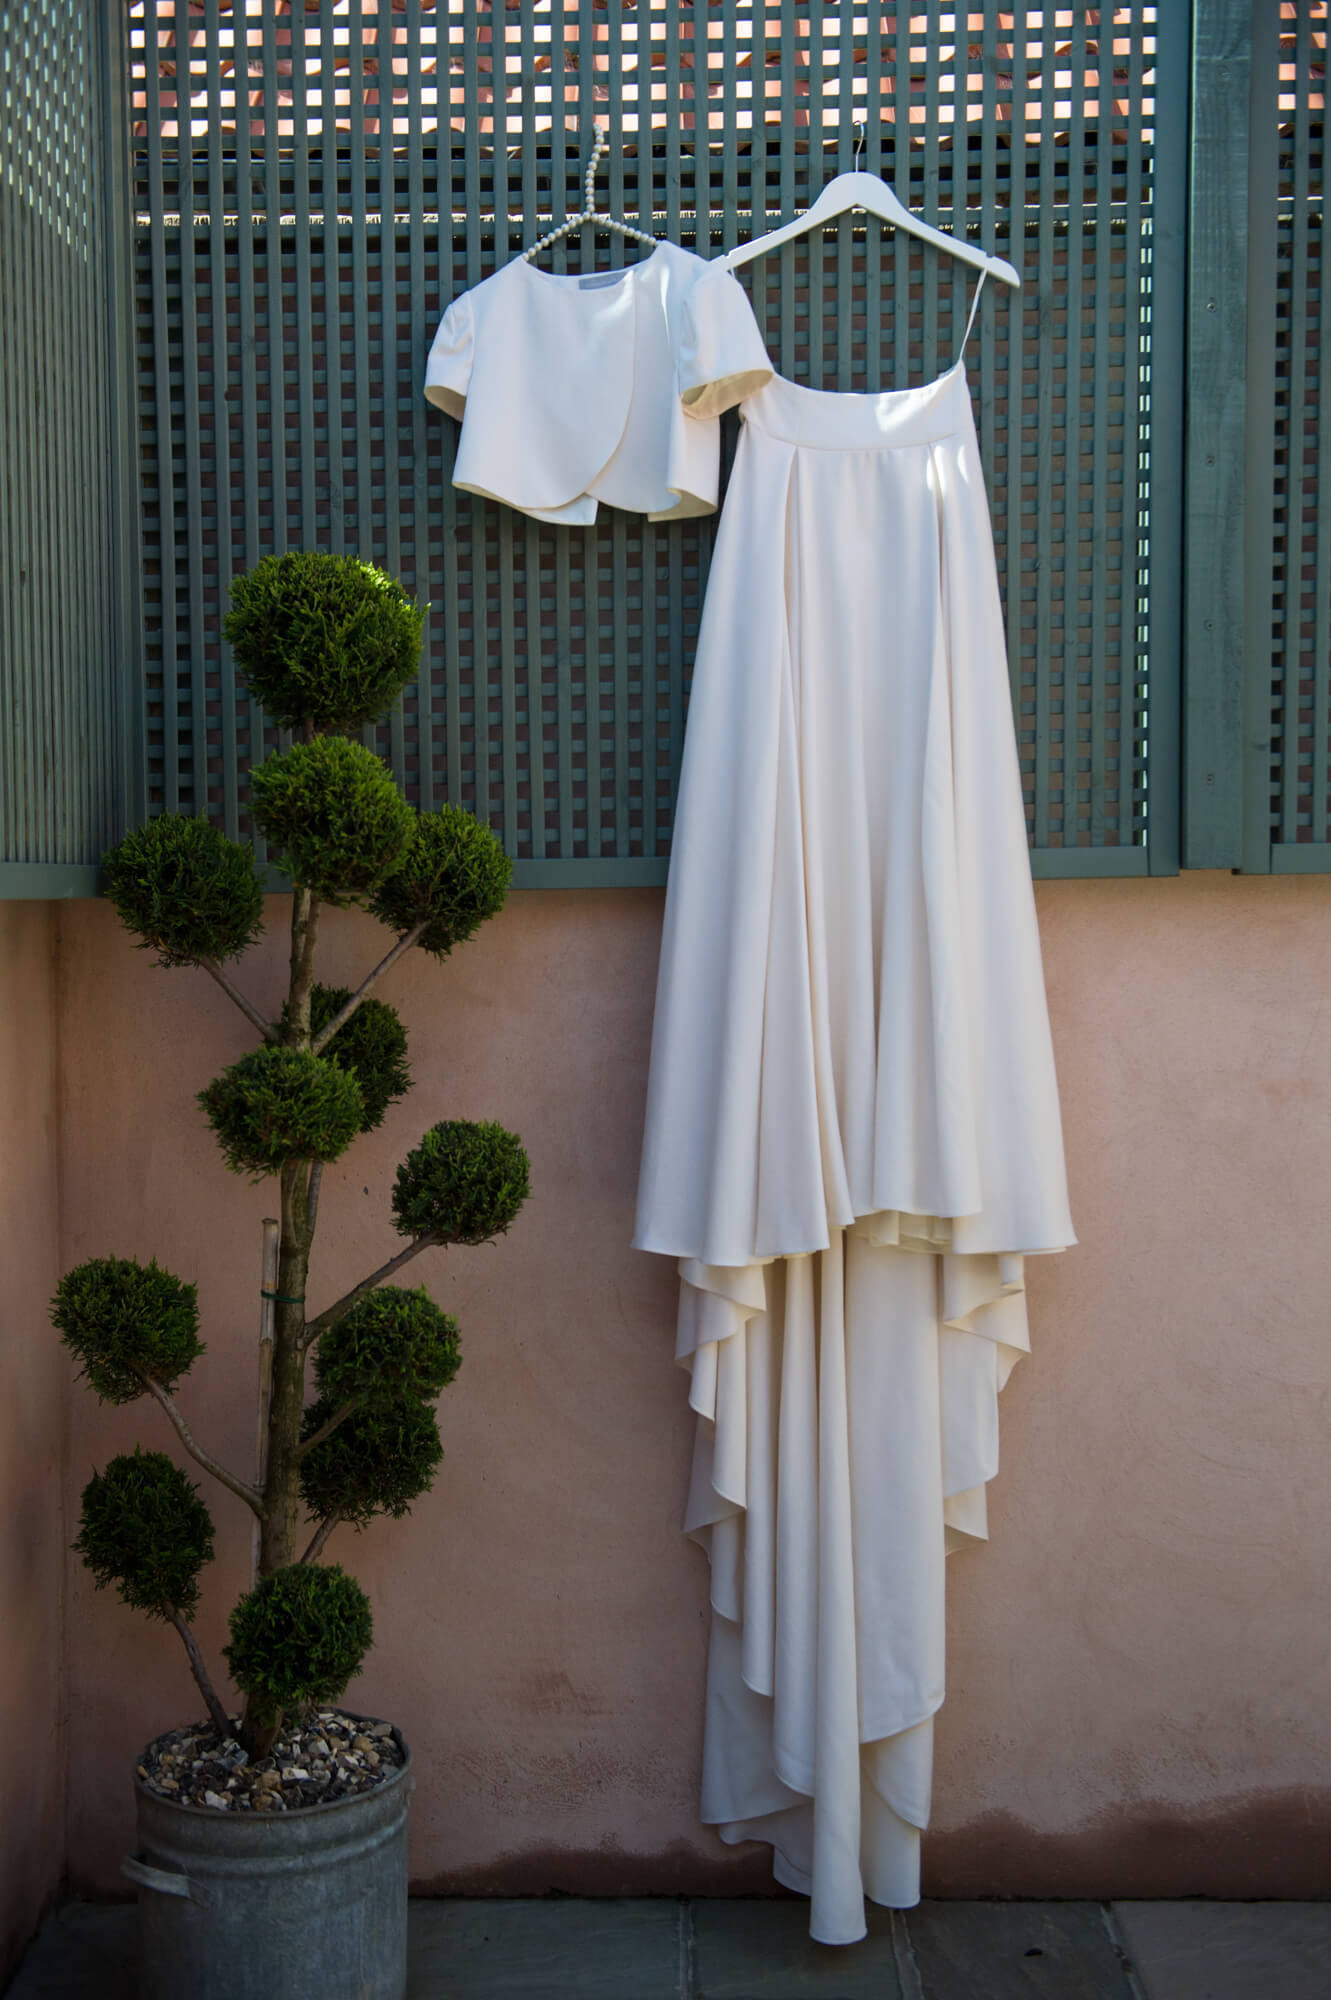 An elizabeth stuart wedding gown hanging up in a pretty mediterranean garden